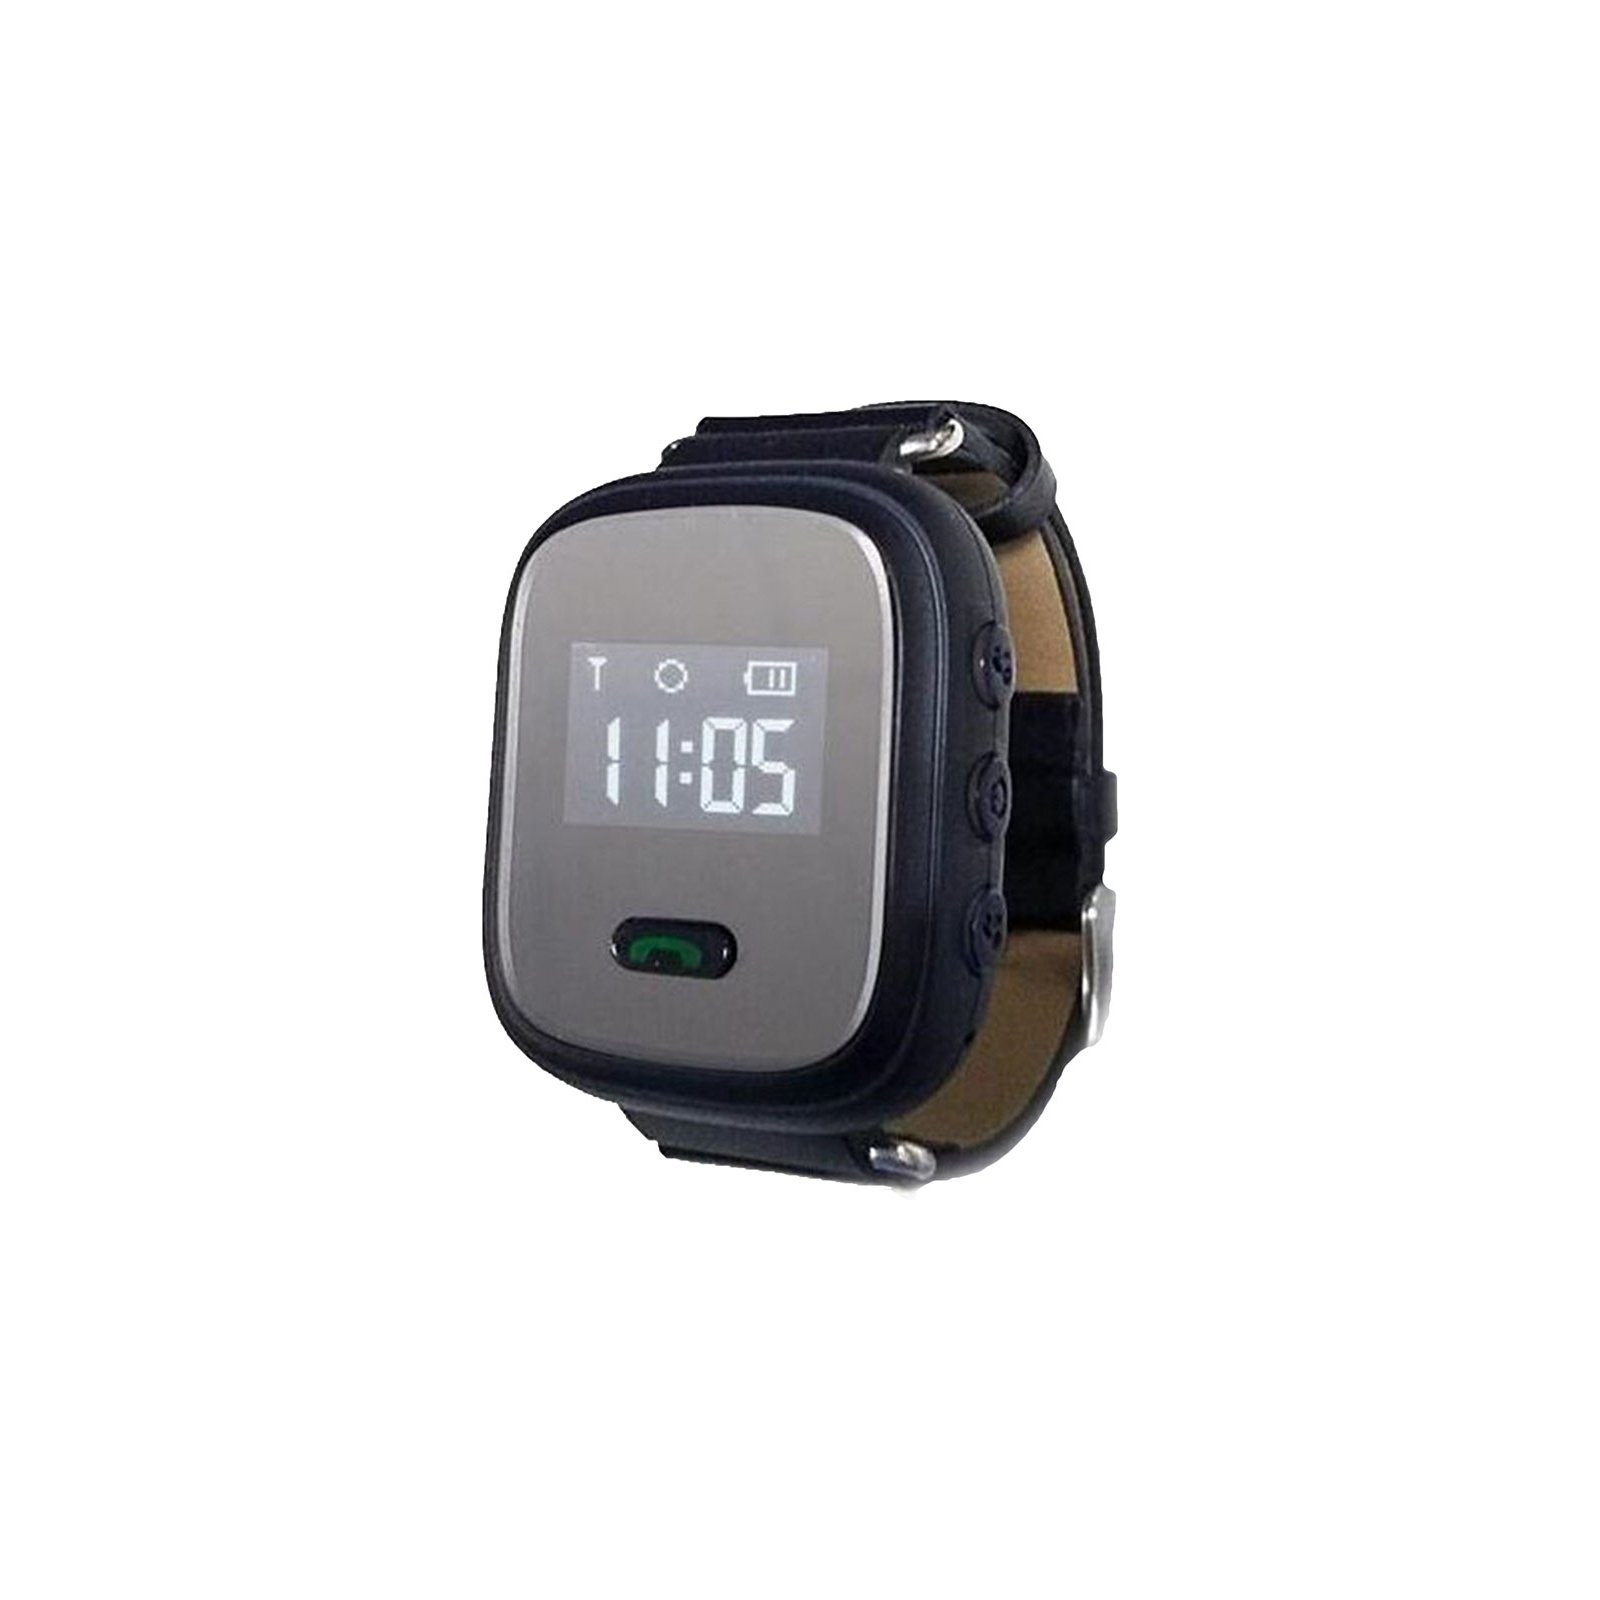 Смарт-часы UWatch Smart Q803 Black (F_54023)